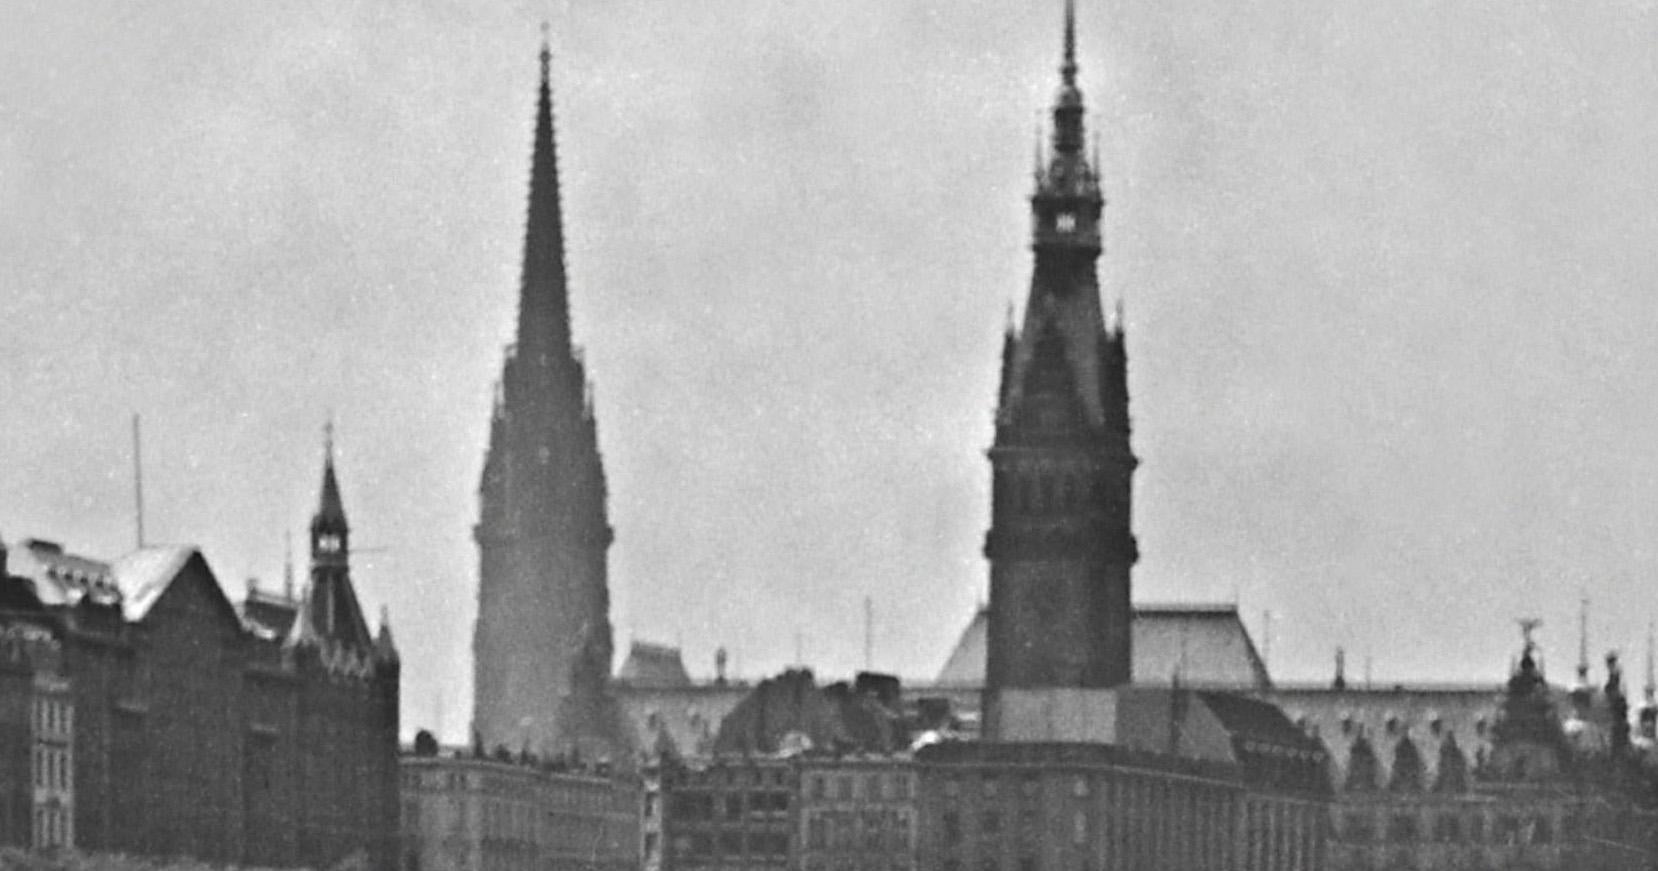 Boats am Heck auf Alster mit Blick auf das Stadthaus von Hamburg, Deutschland 1938, Später gedruckt  (Moderne), Photograph, von Karl Heinrich Lämmel